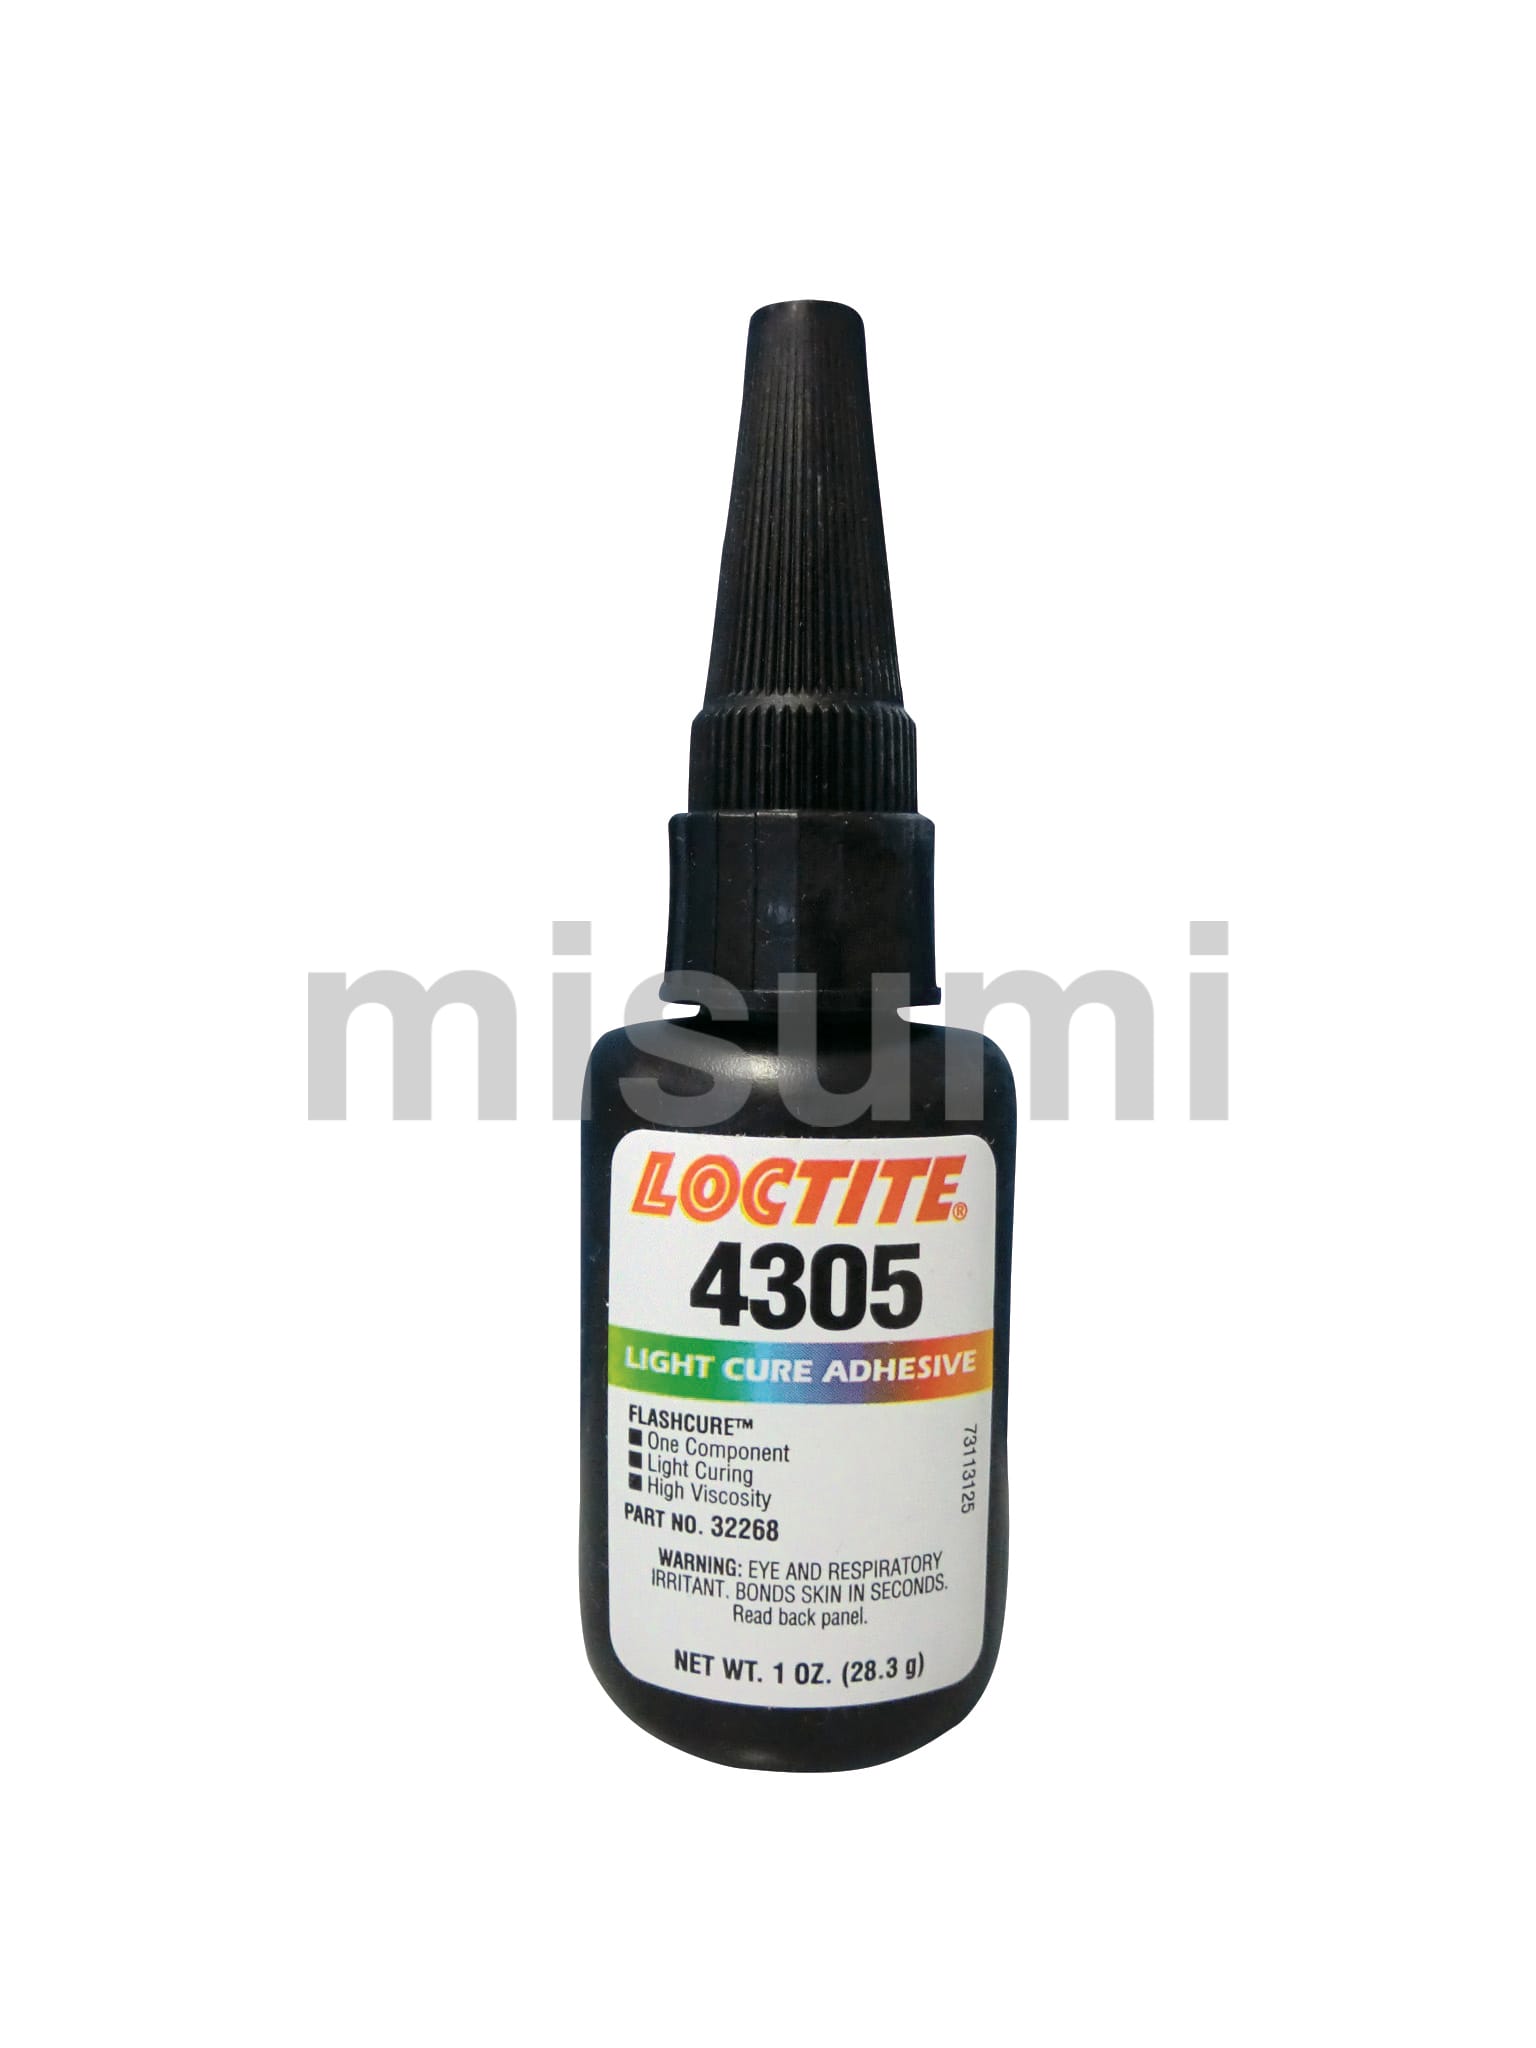 4304-28 紫外線・可視光硬化型接着剤 詳細タイプ:低粘度タイプ 容量:28g ヘンケル ミスミ 366-9840